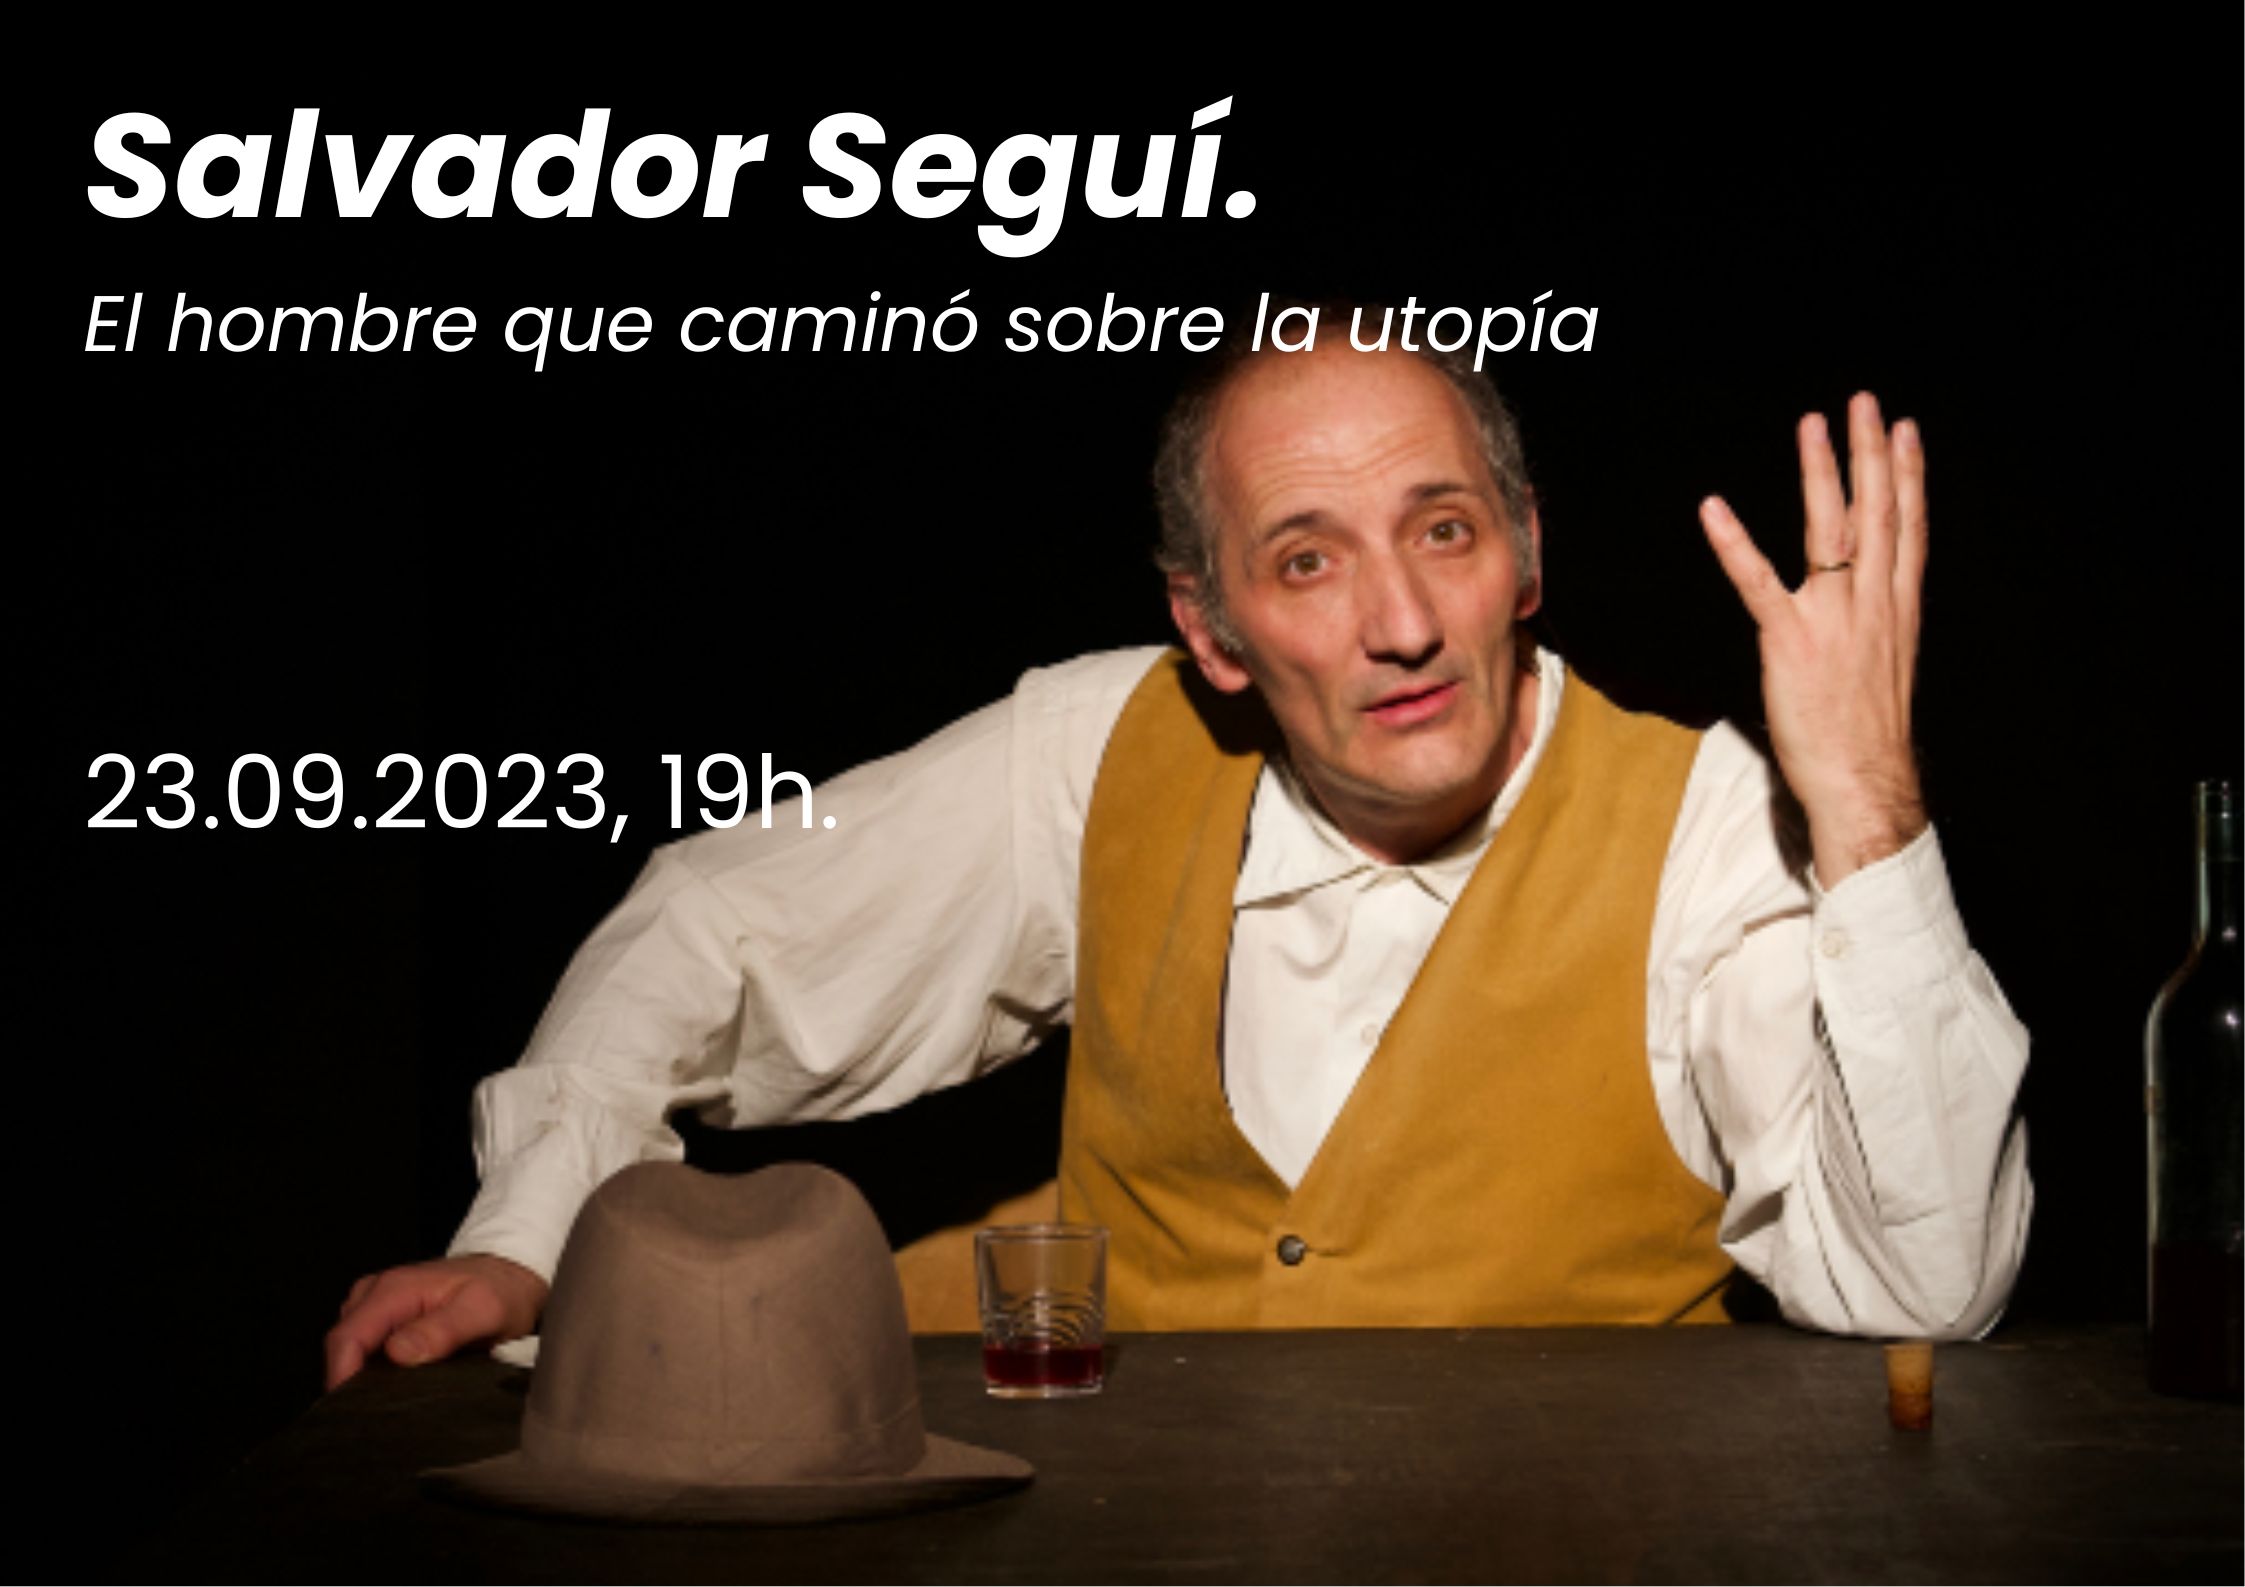 Salvador Seguí. El hombre que caminó sobre la utopía